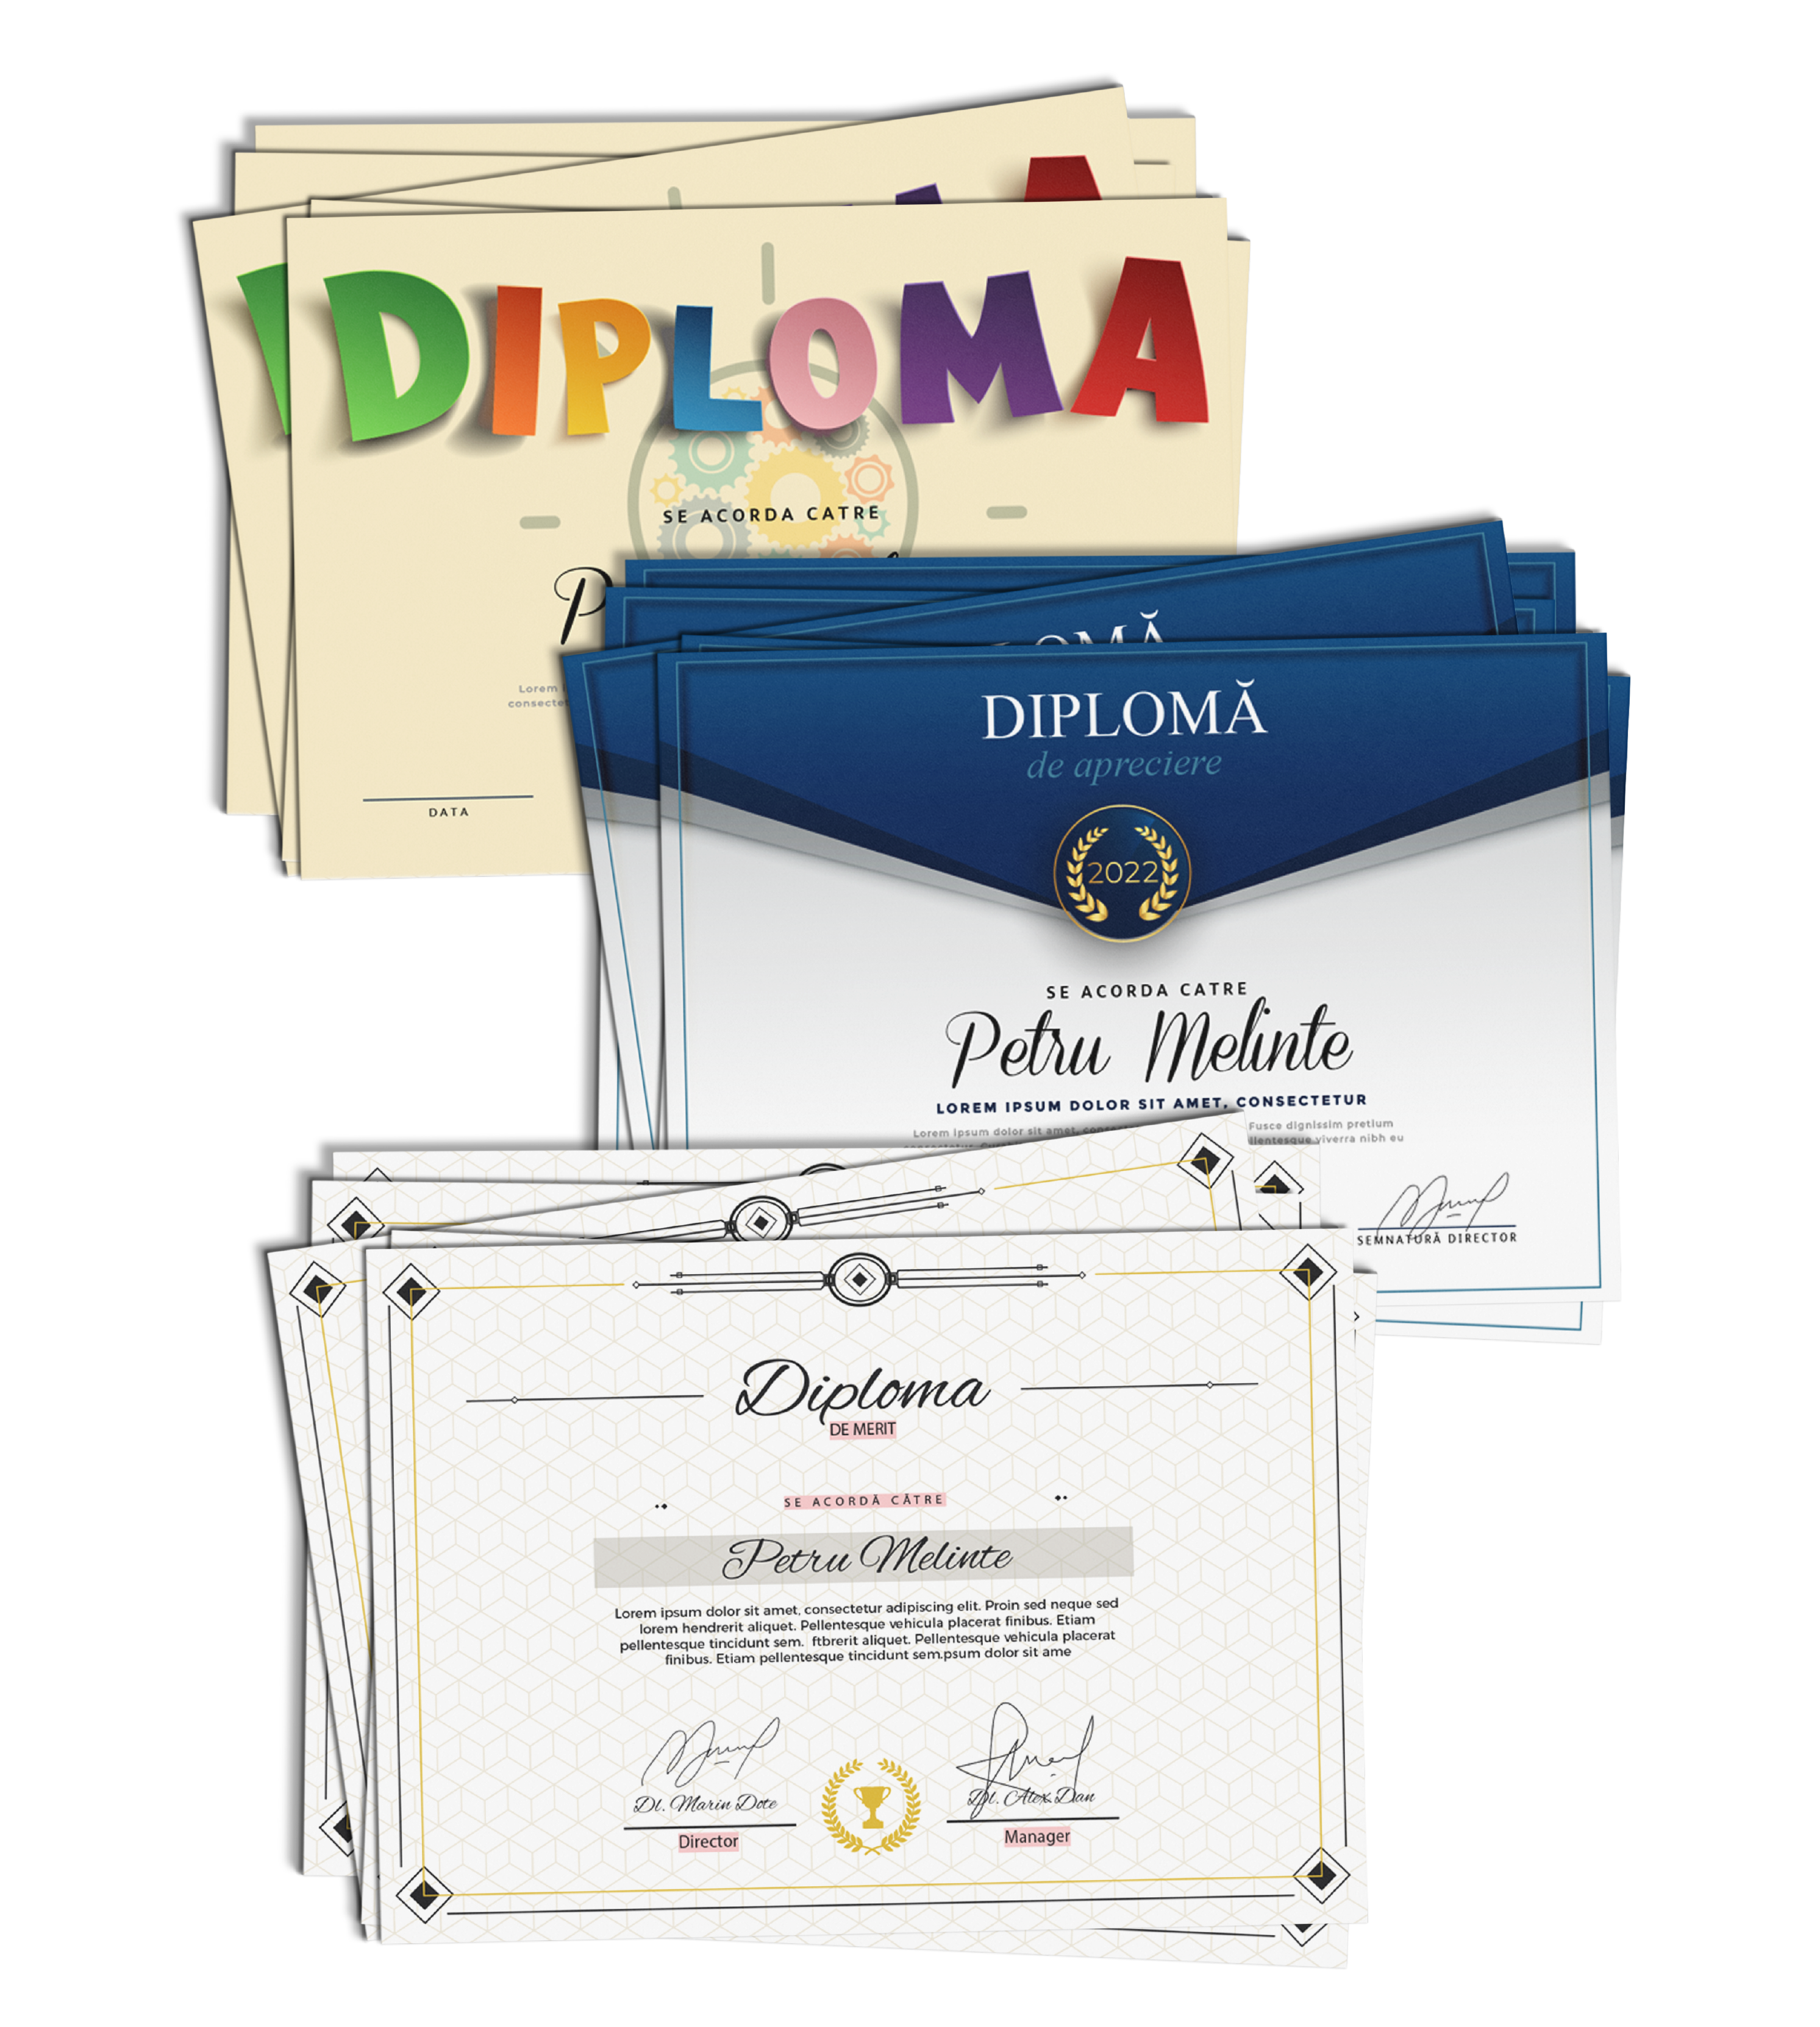 Diplome